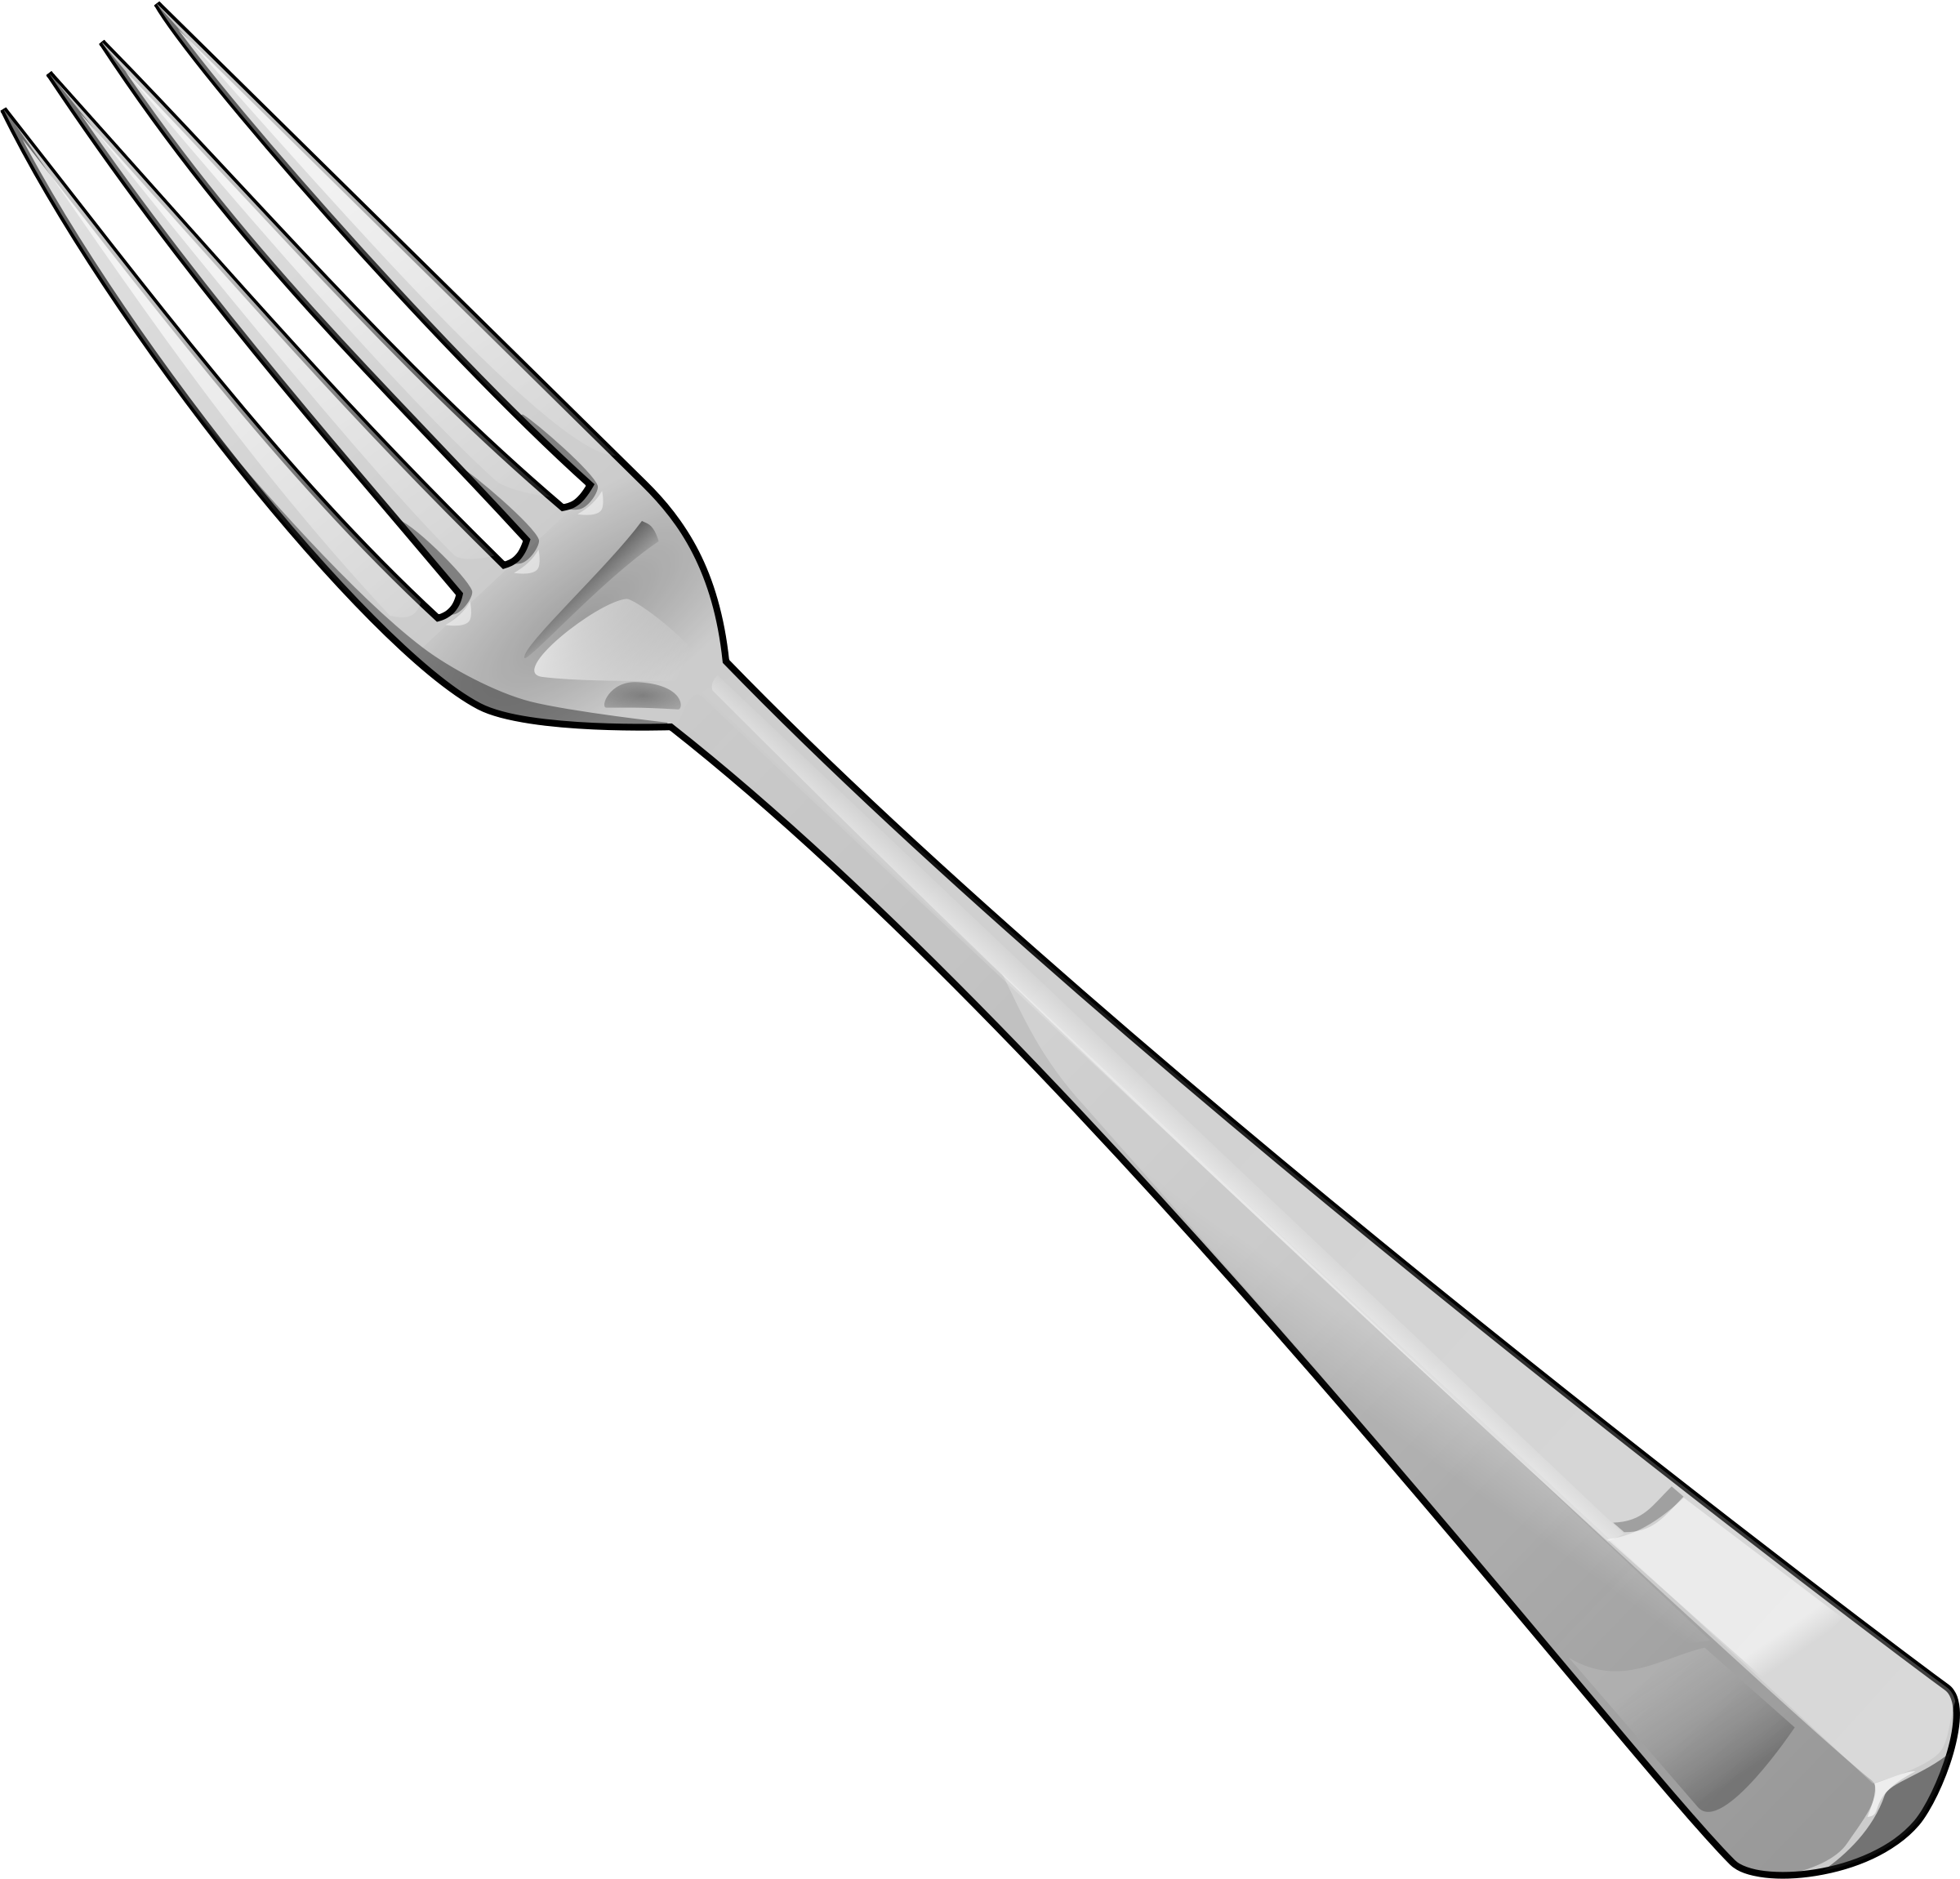 Forks images free fork picture download clip art